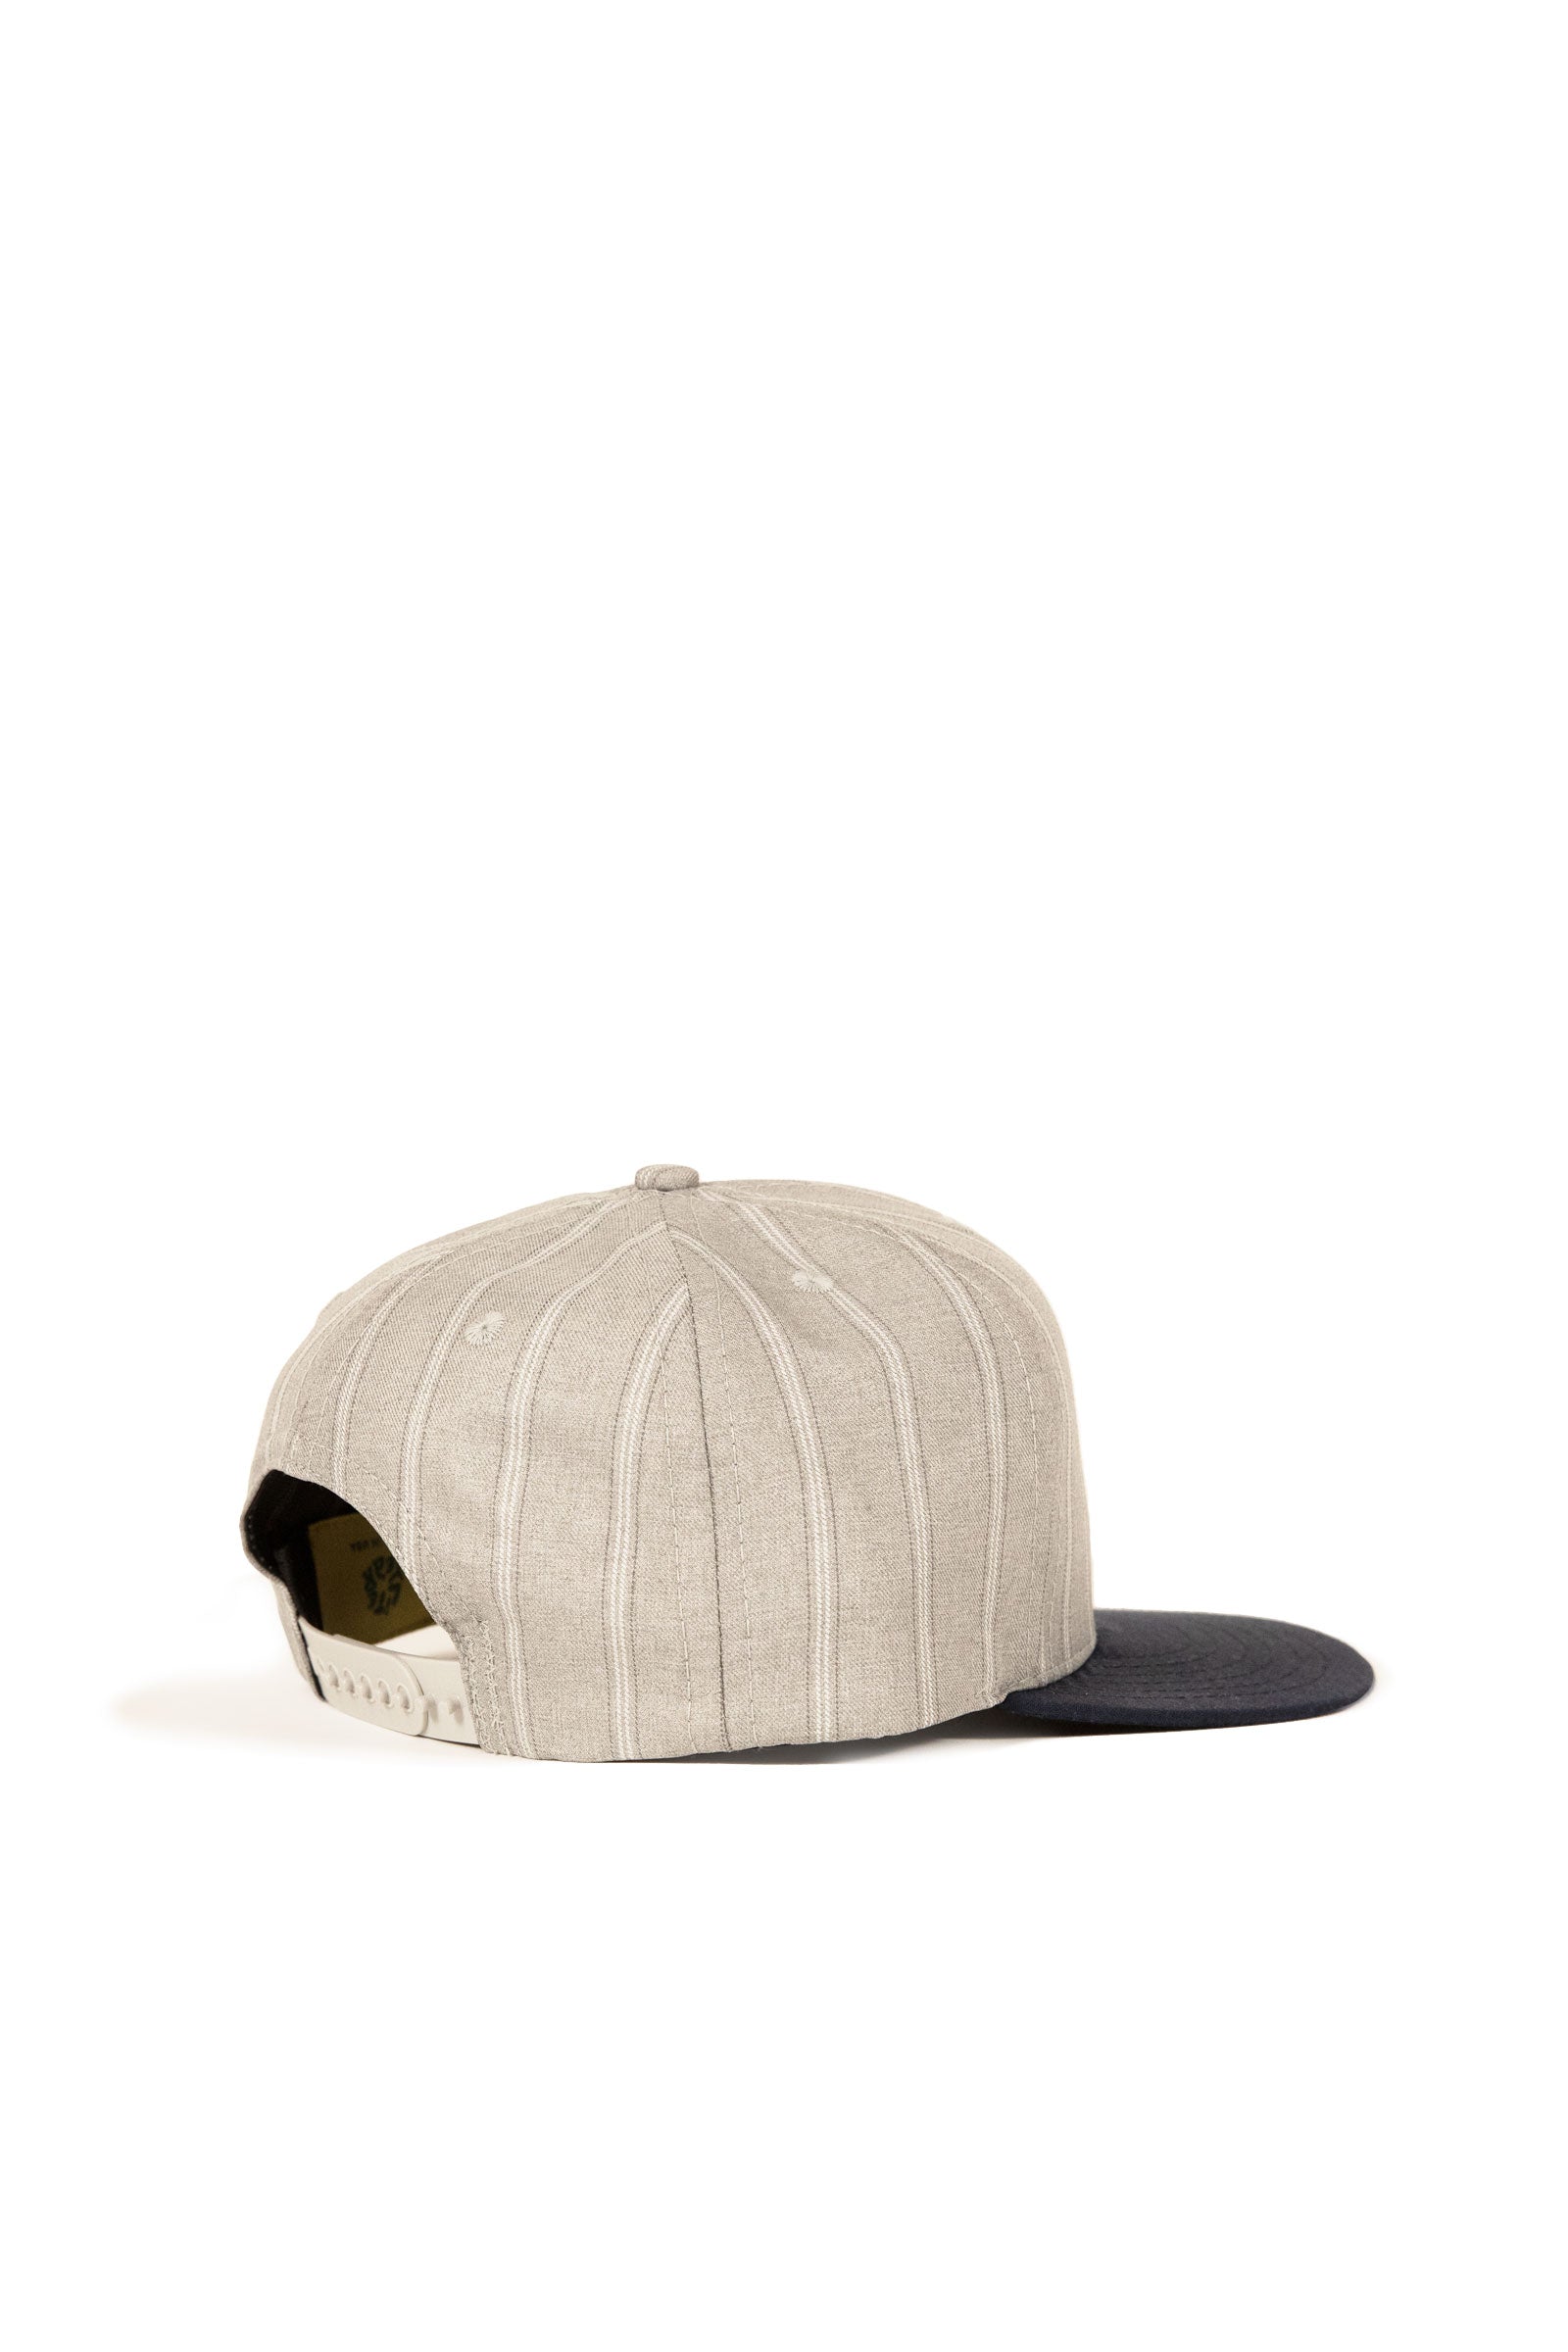 NY Baseball Cap - Grey/Navy